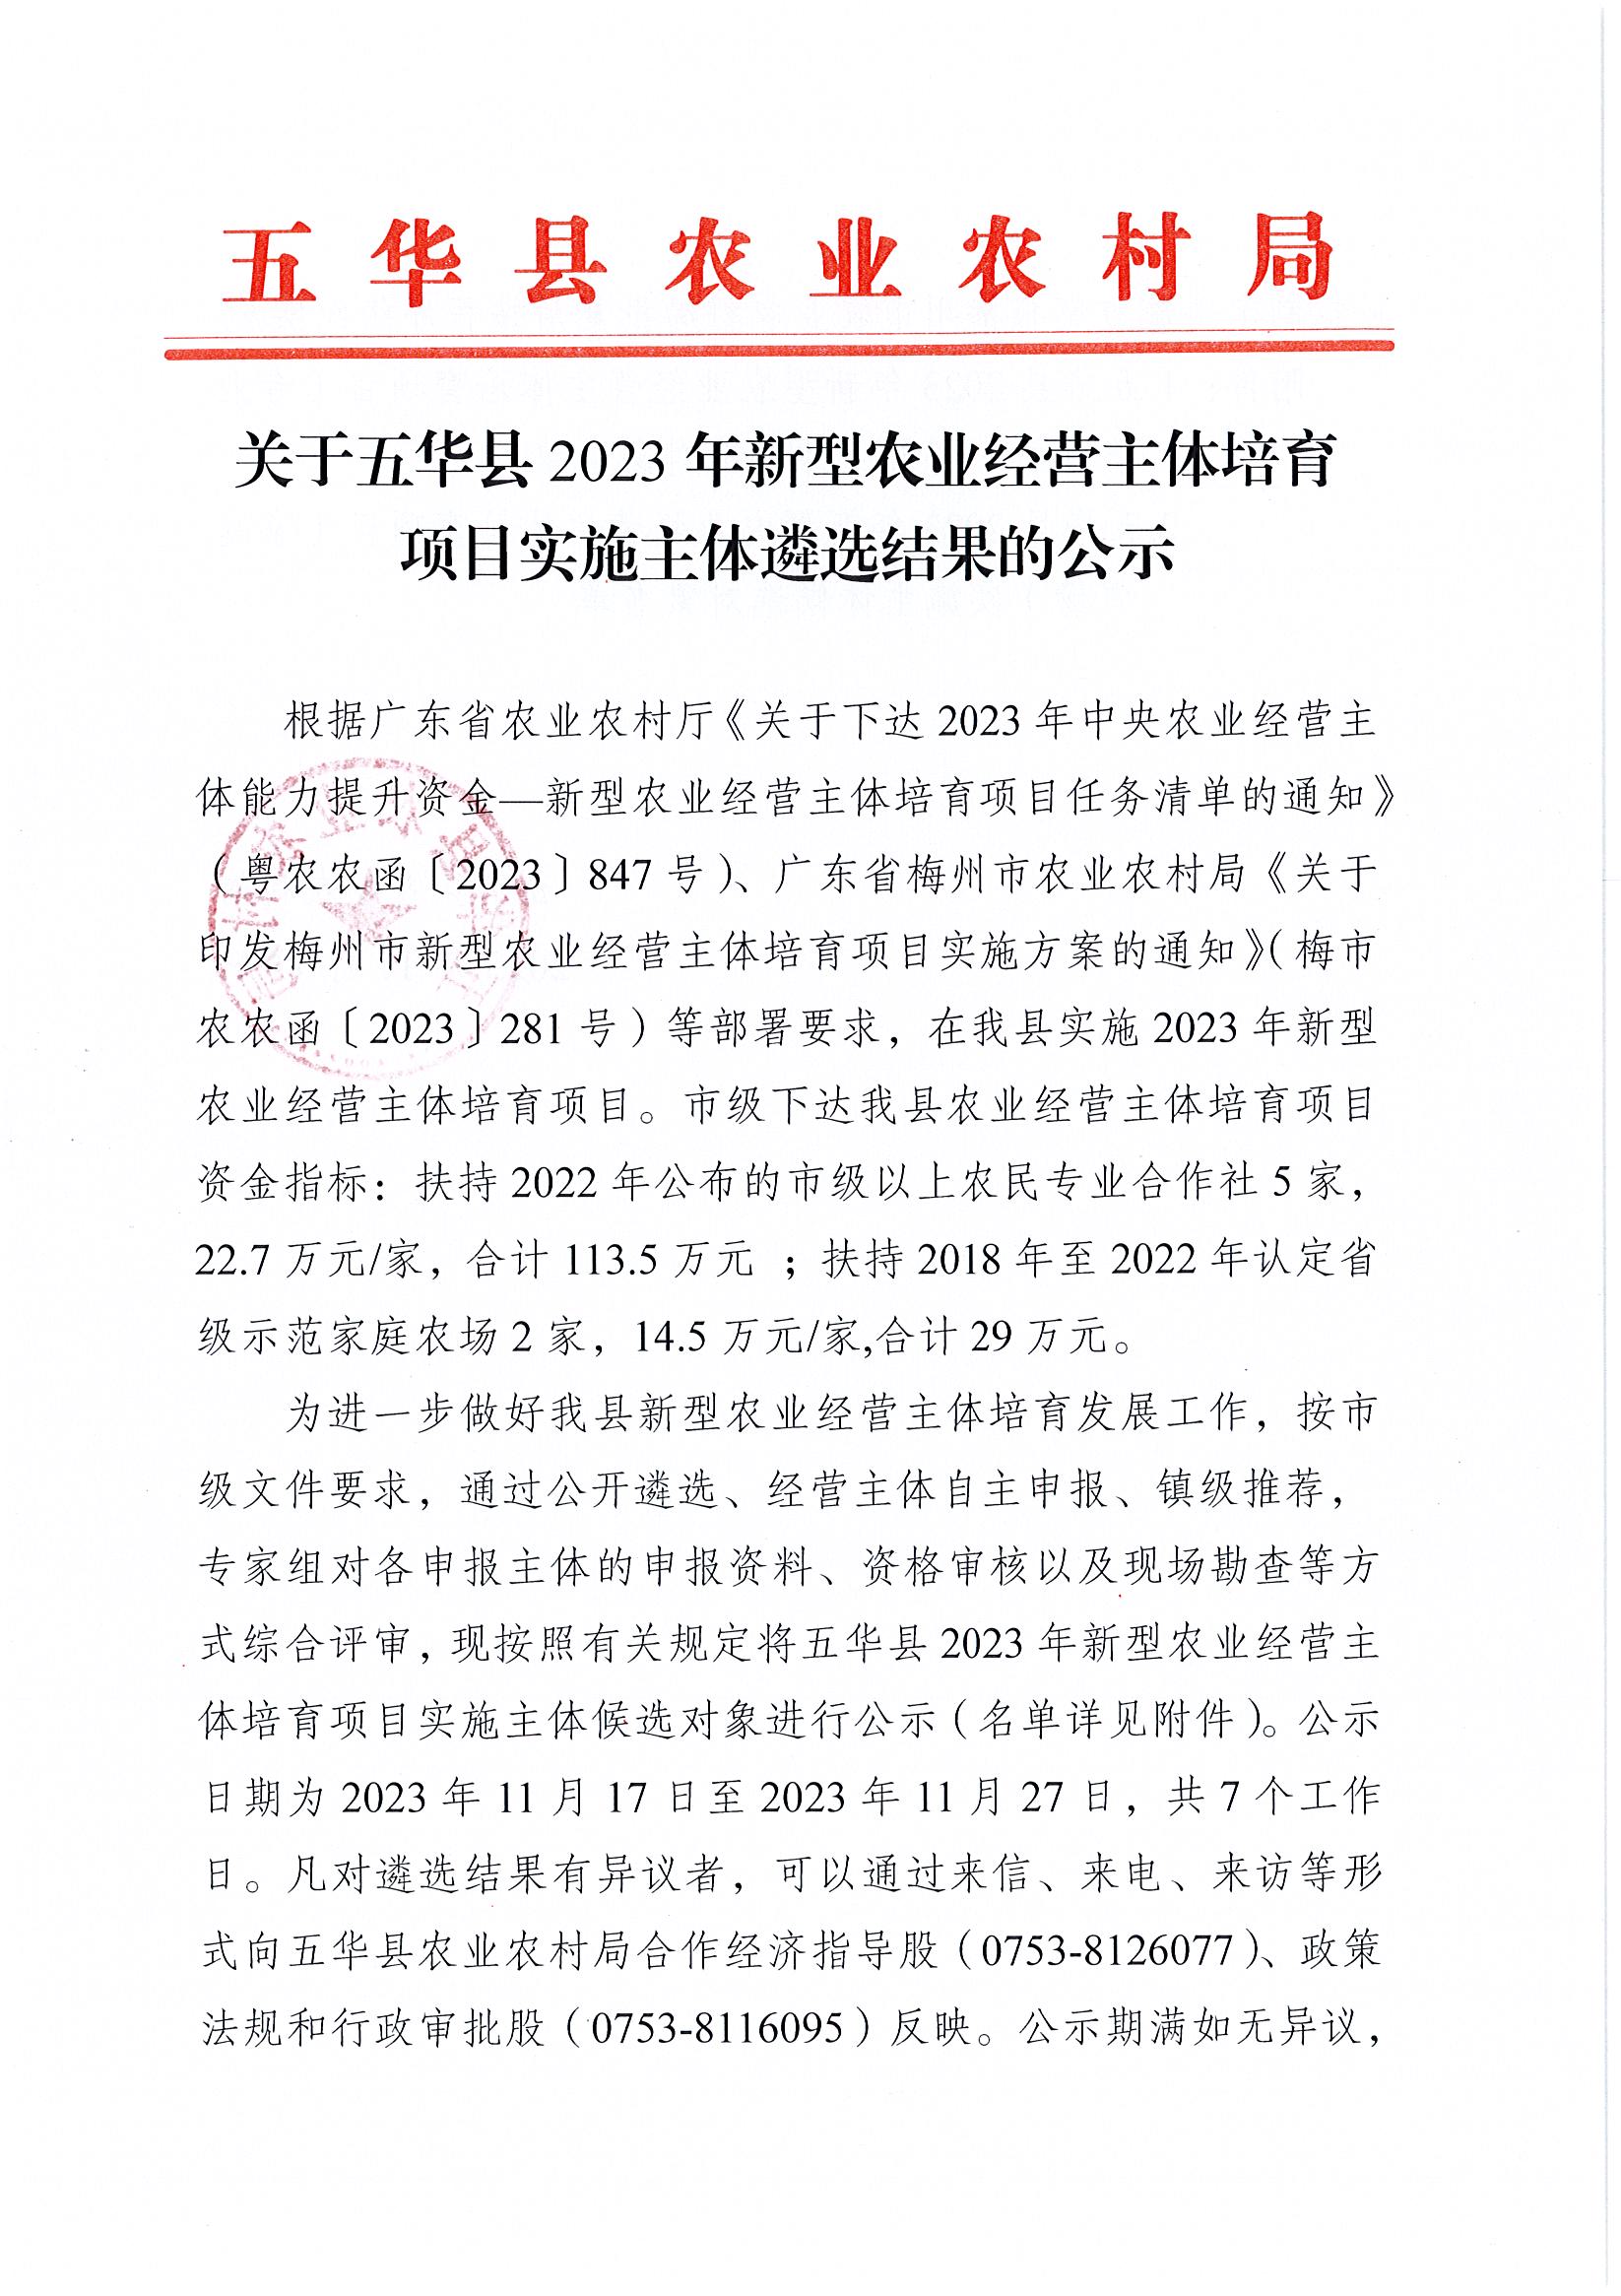 关于五华县2023年新型农业经营主体培育项目实施主体遴选结果的公示1.jpg